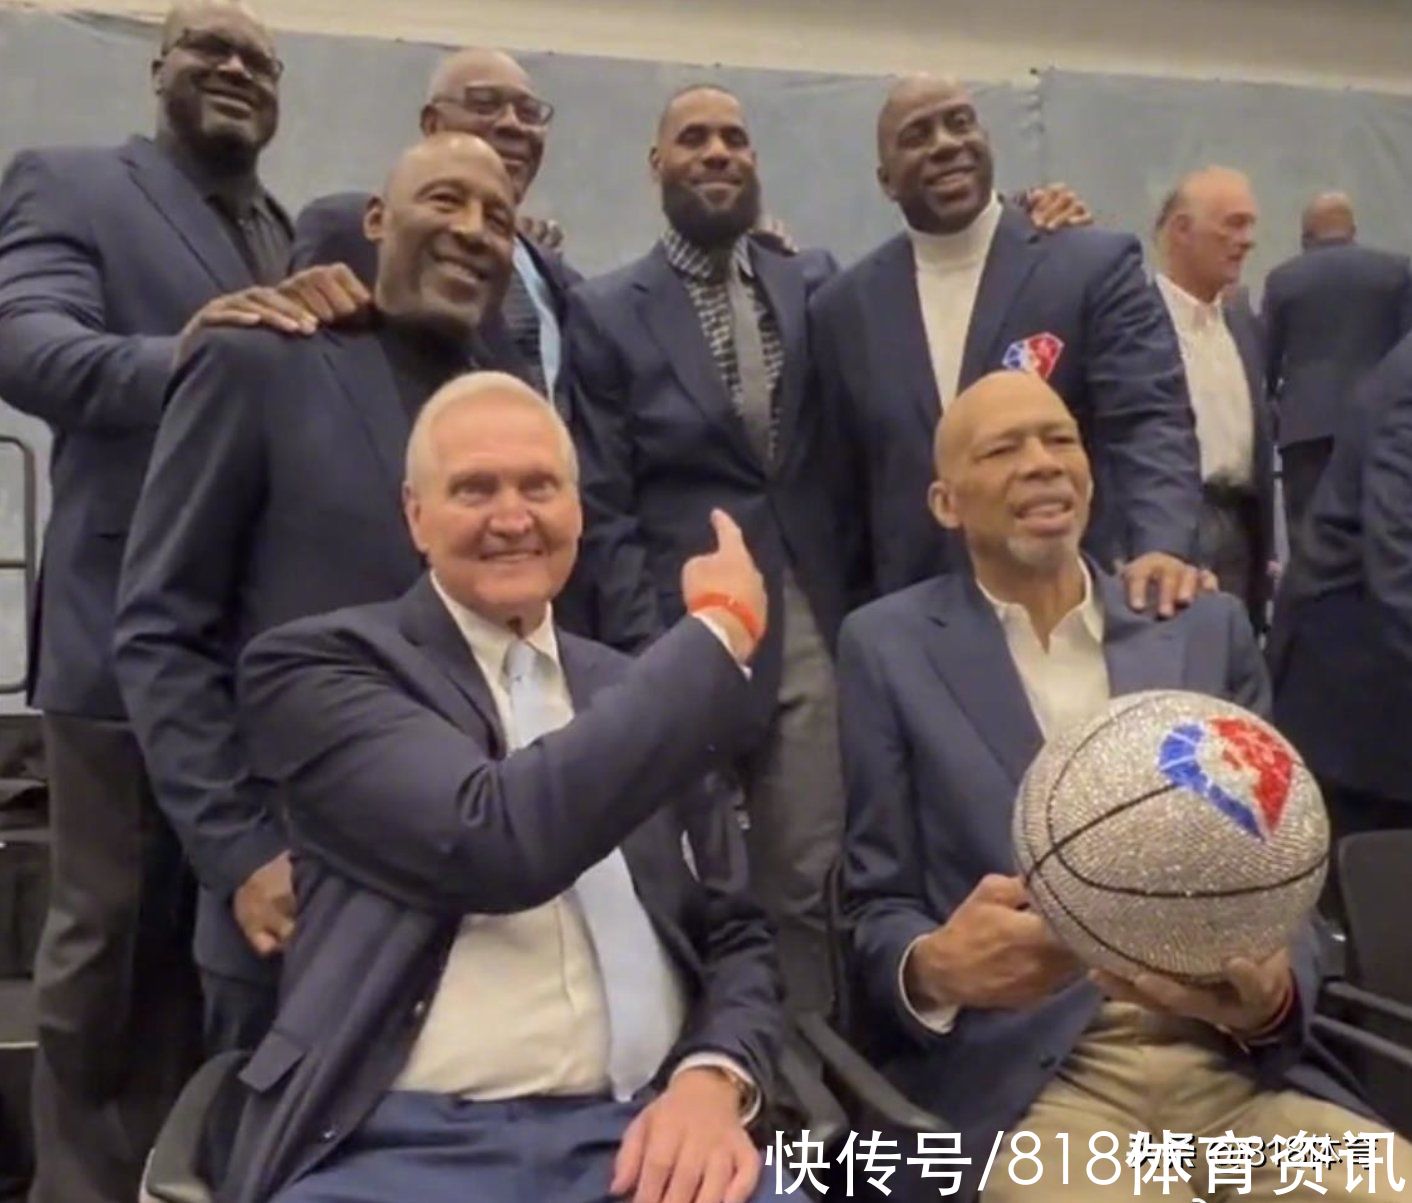 詹姆斯|泪目!NBA75周年詹皇魔术师湖人7大超巨同框,logo男指C位留给科比